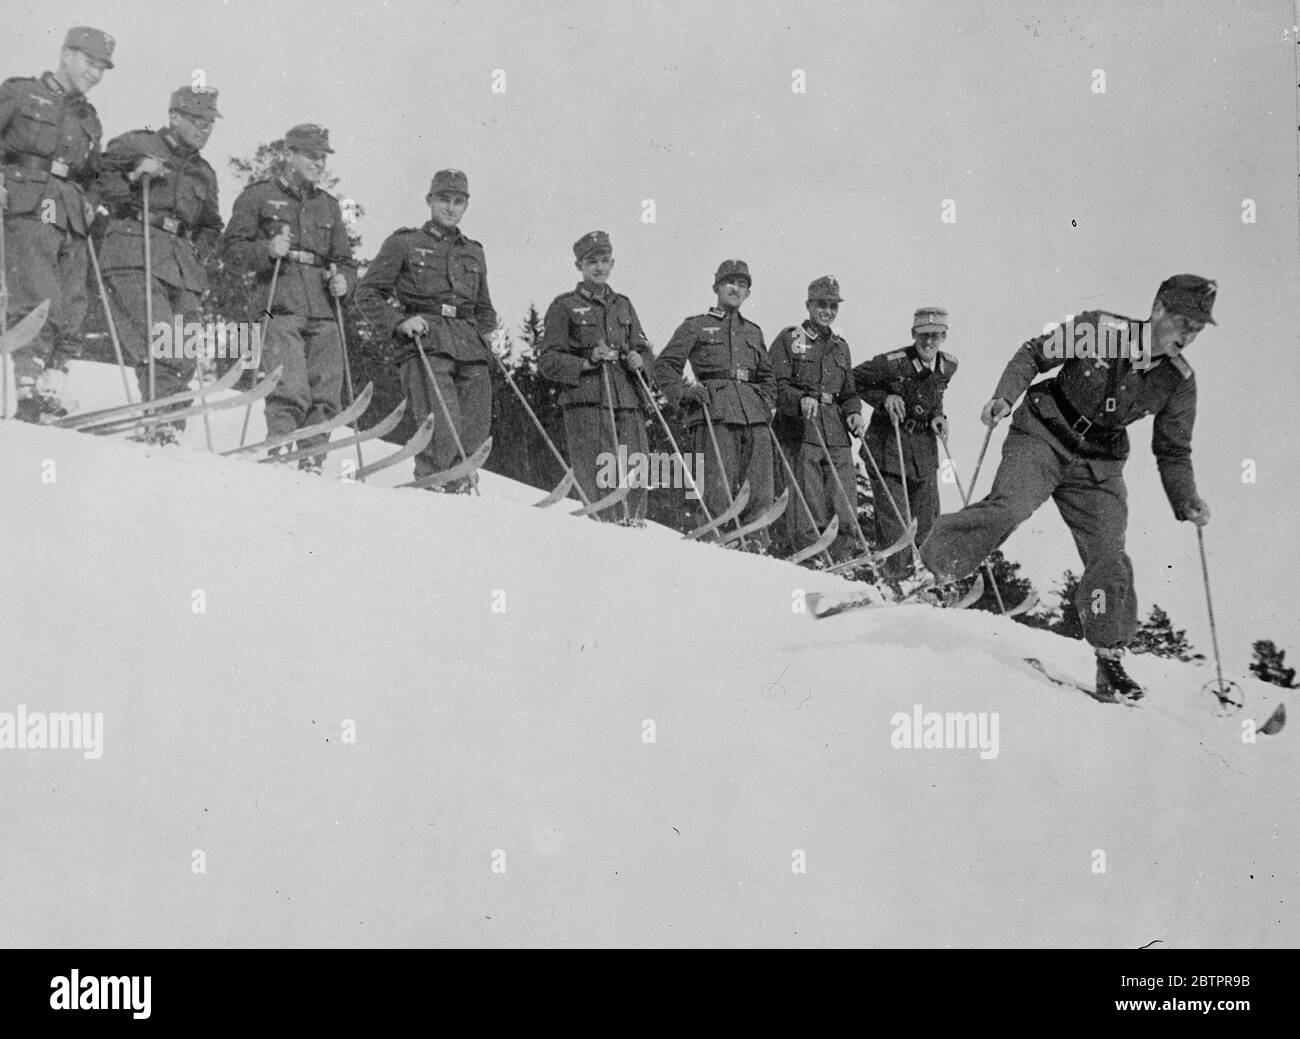 Commande parfaite ! L'équipe de ski du 19e Régiment de montagne de l'armée allemande regardant une démonstration du chef, le lieutenant Sommer, pendant l'entraînement, près de Mitterwald pour les championnats de ski de l'armée allemande qui se dérouleront le mois prochain. 18 janvier 1938 Banque D'Images